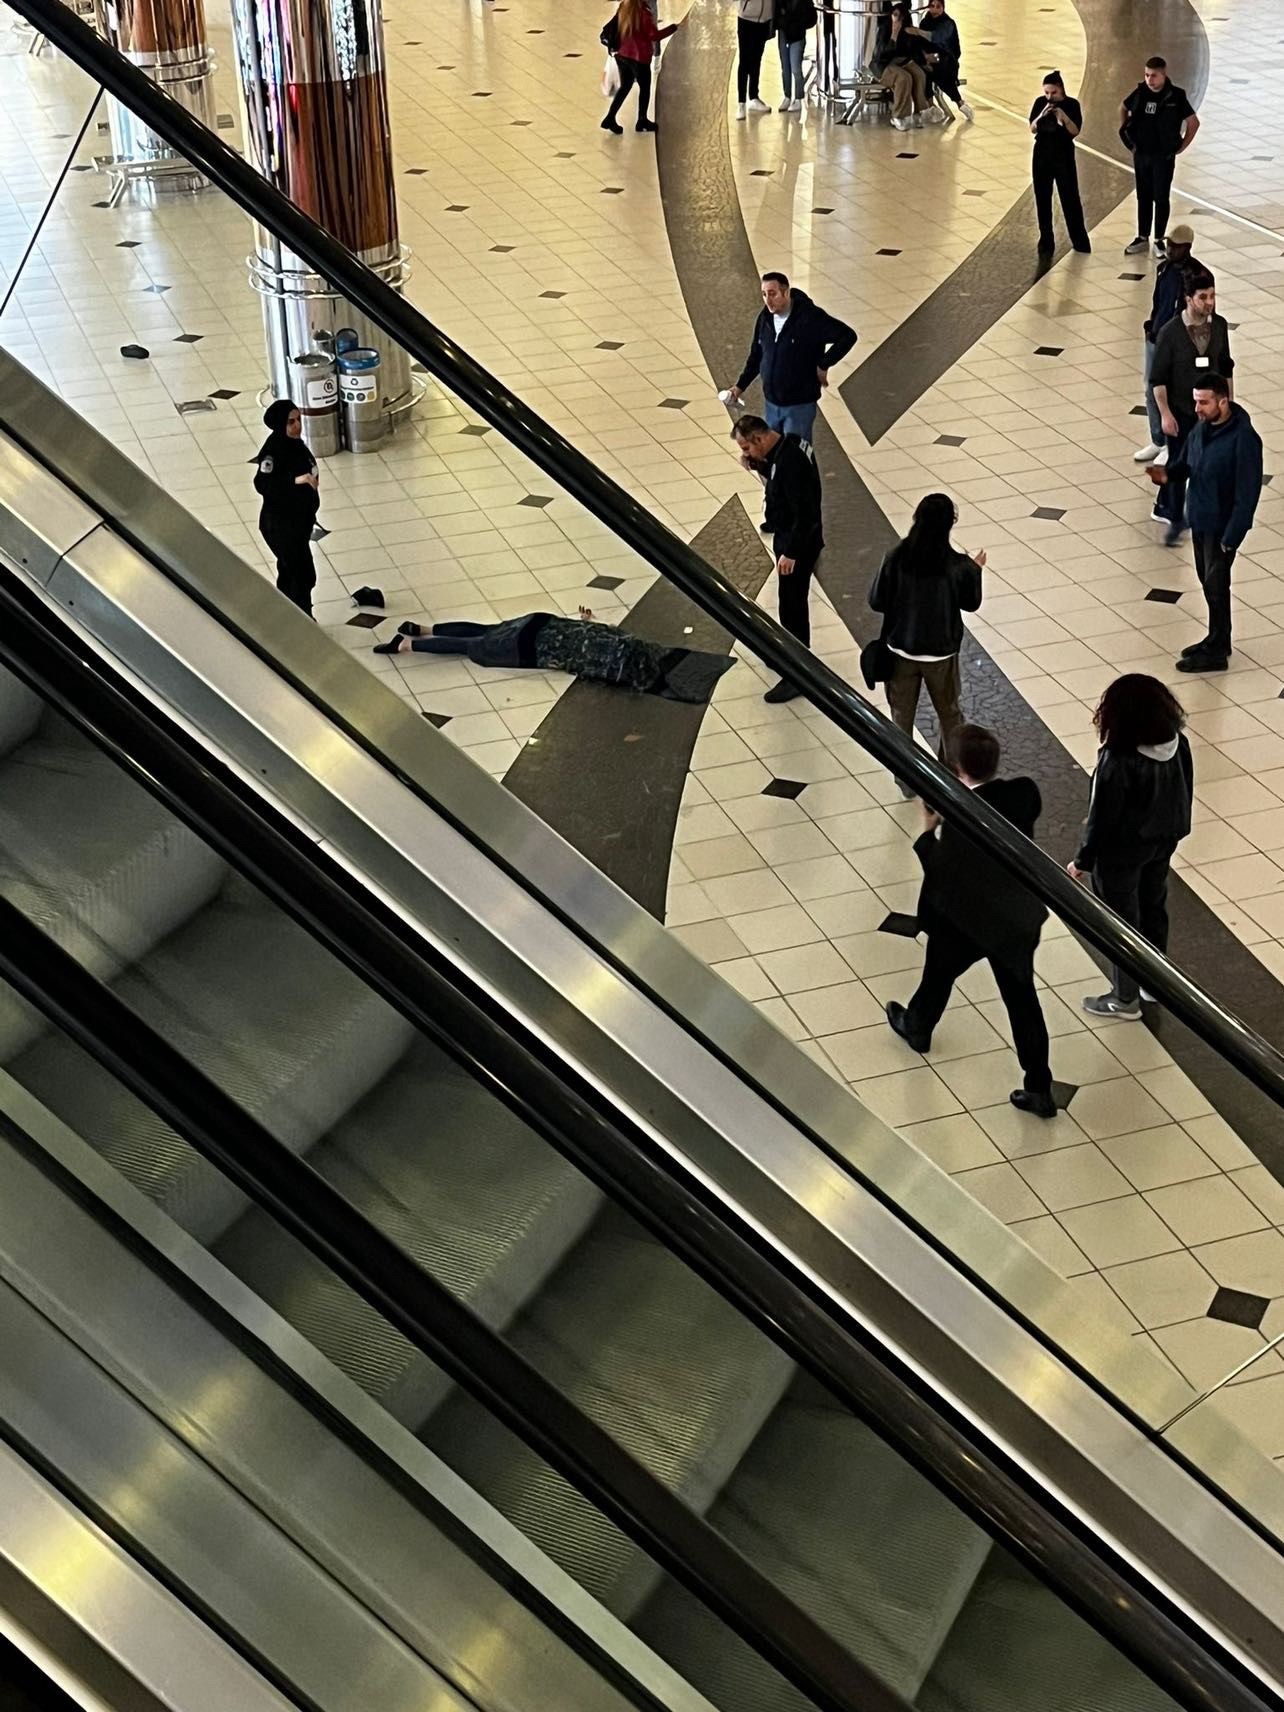 Cevahir AVM'de korkunç olay: 5. kattan atlayan kadın... [VİDEO HABER]